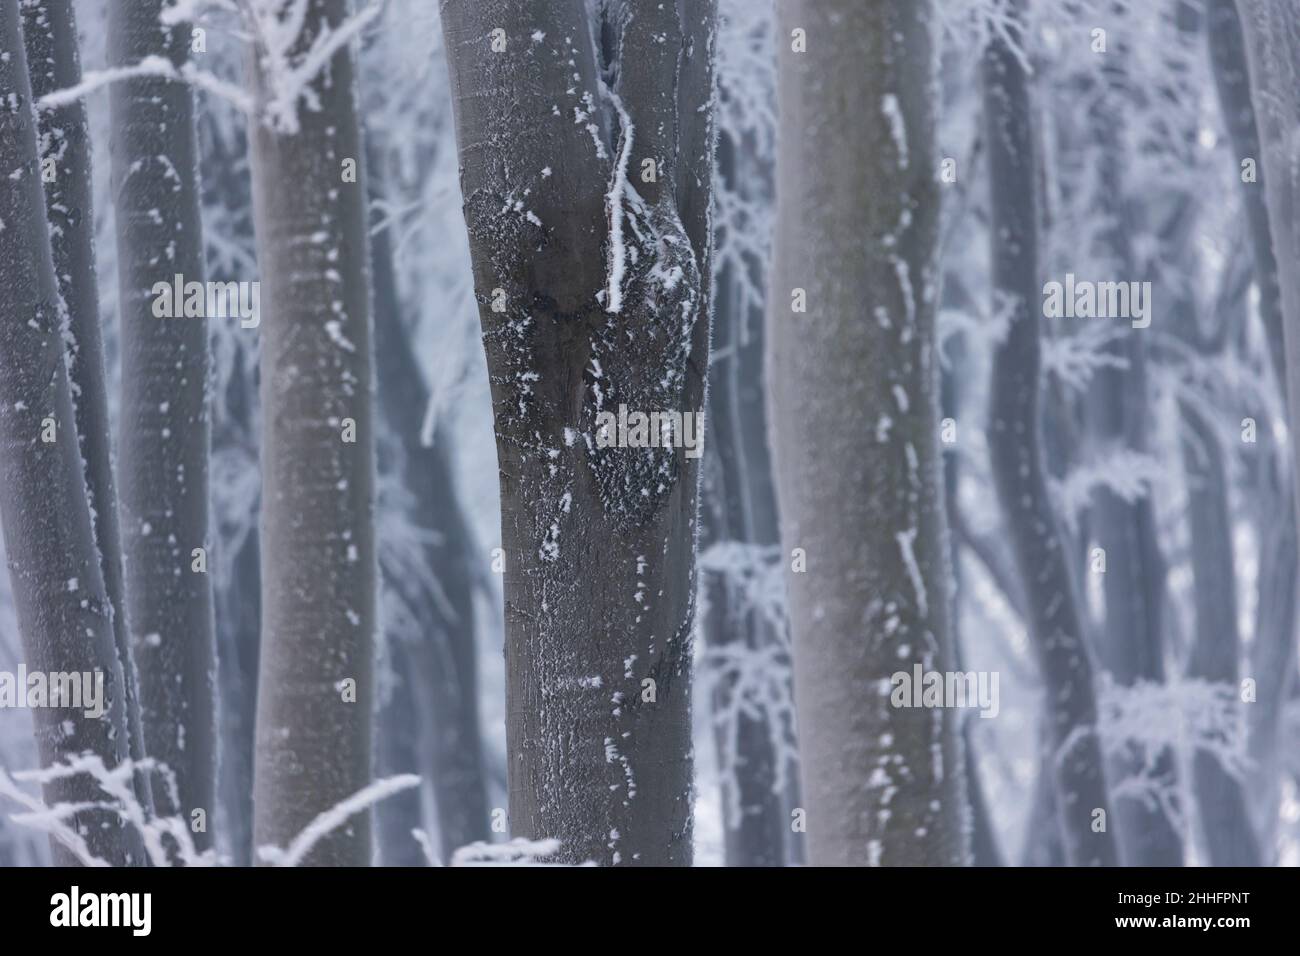 Bosco di faggio in inverno. Rami di albero e tronchi coperti di rime. Foto scattata in una giornata nuvolosa, con luce uniforme e morbida. Foto Stock